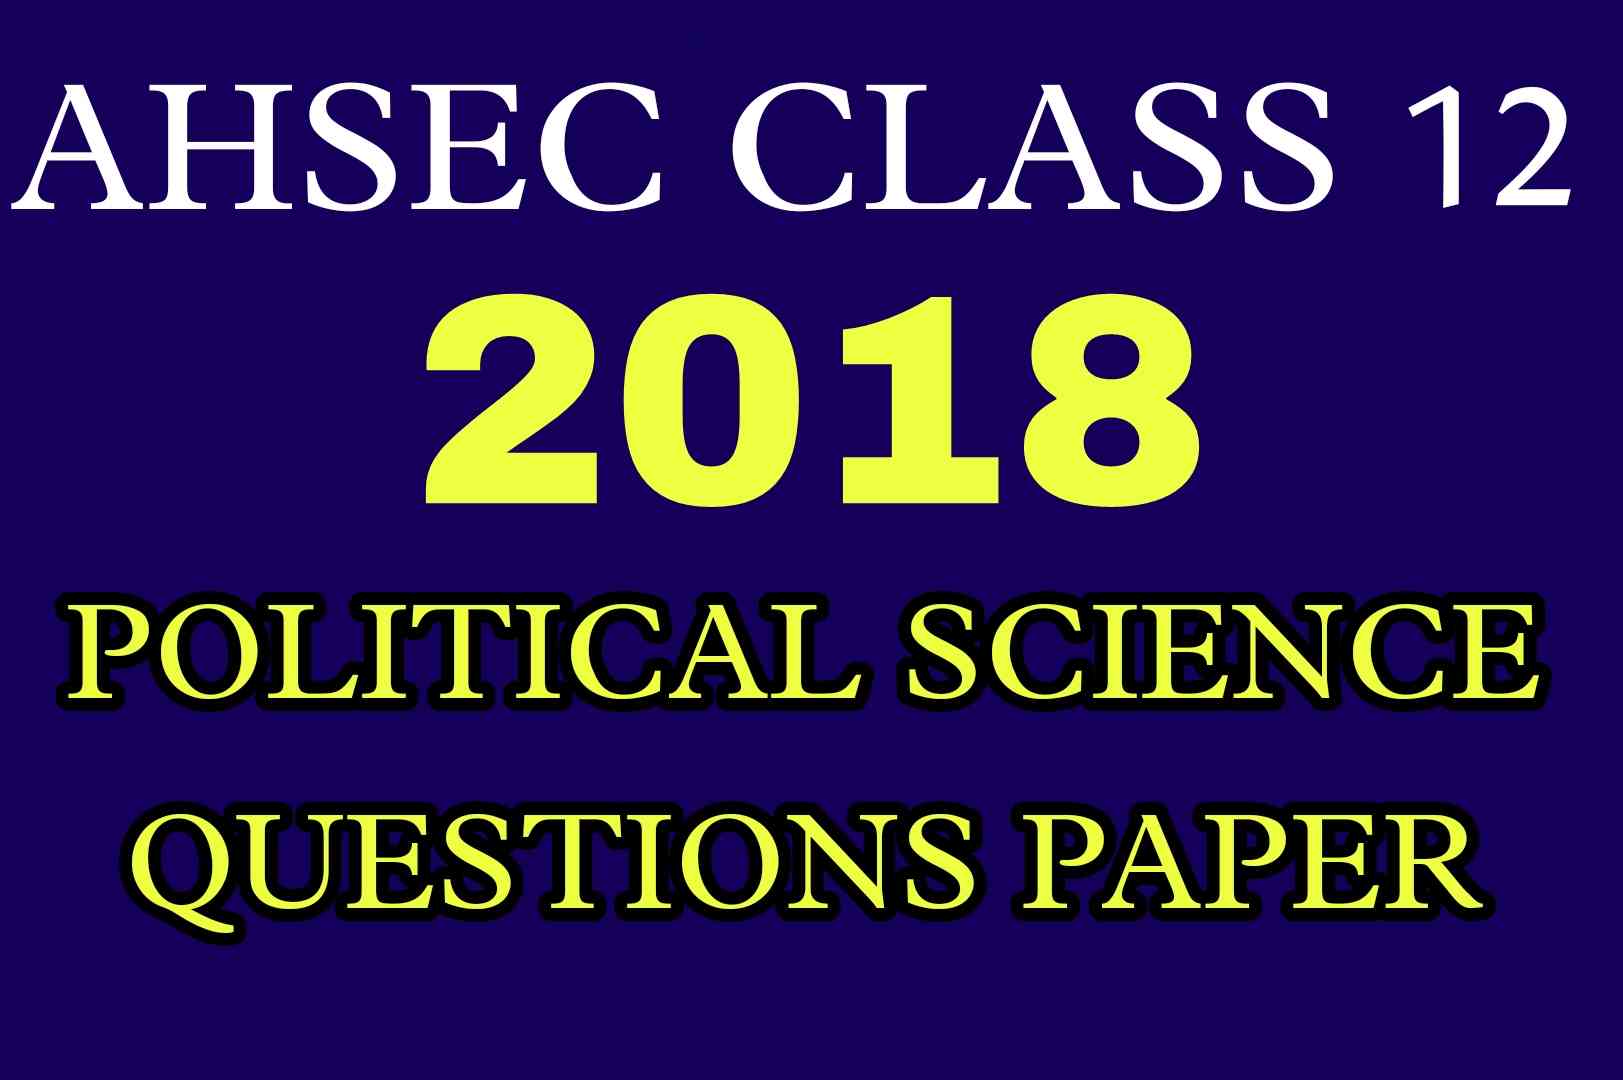 AHSEC Class 12 Political Science Questions Paper 2018 | HS 2nd Year Political Science 2018 Questions Paper